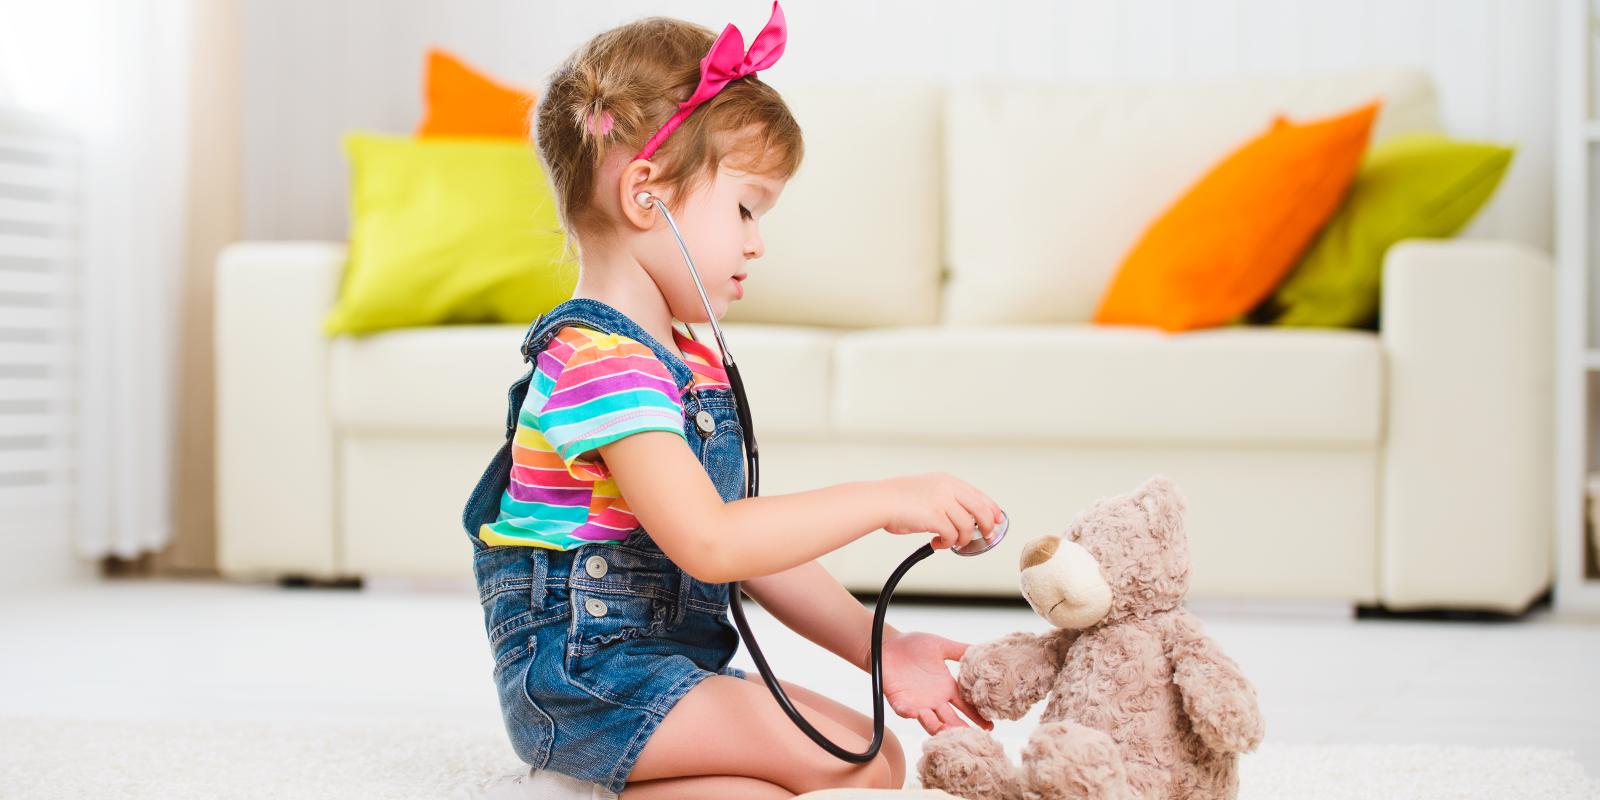 Bilde av barn med bamse og stetoskop Illustrasjonsfoto: Colourbox.com